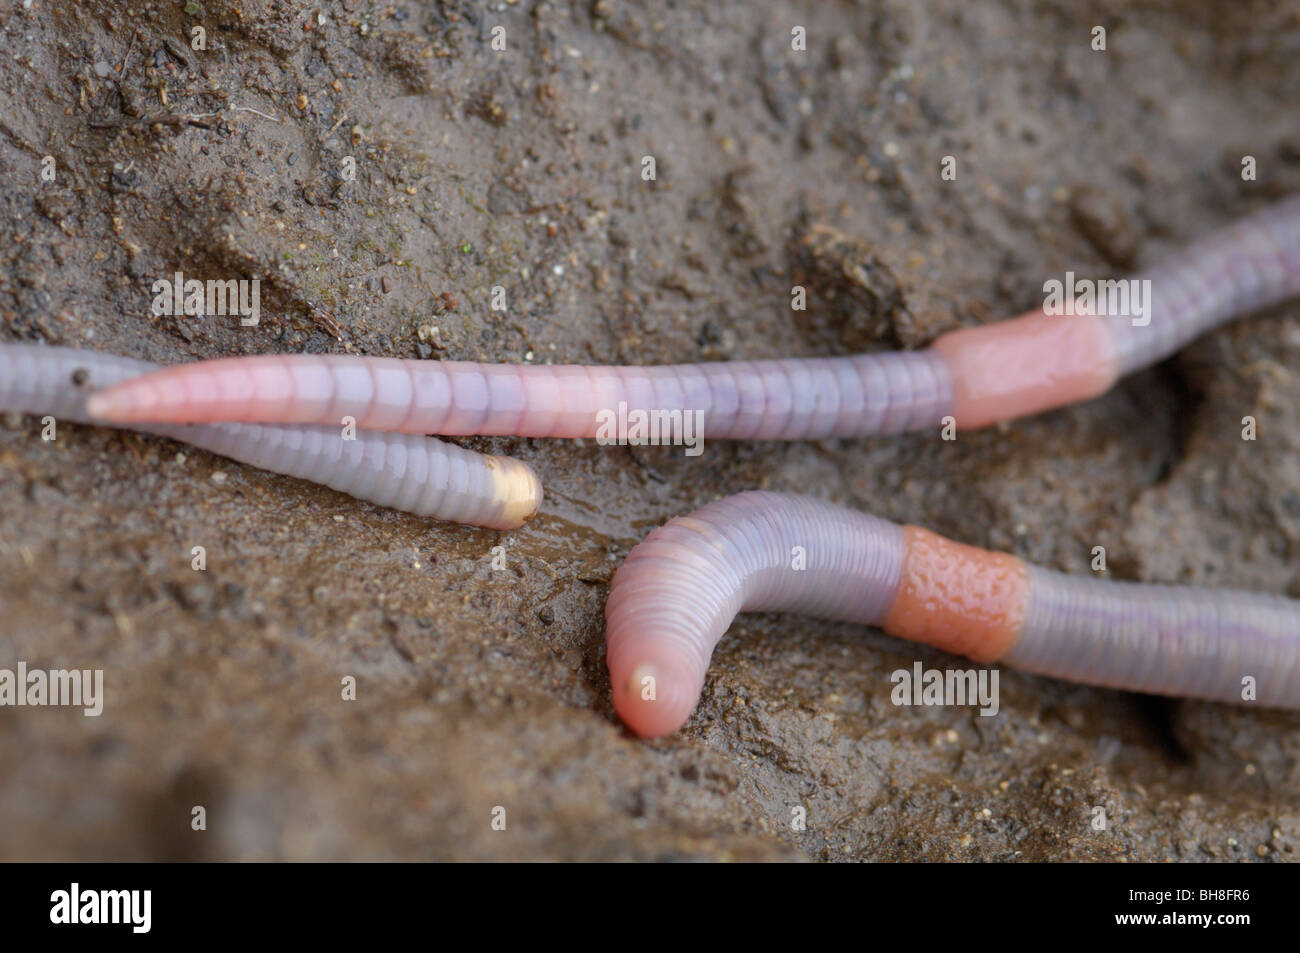 Worm, earthworm Stock Photo